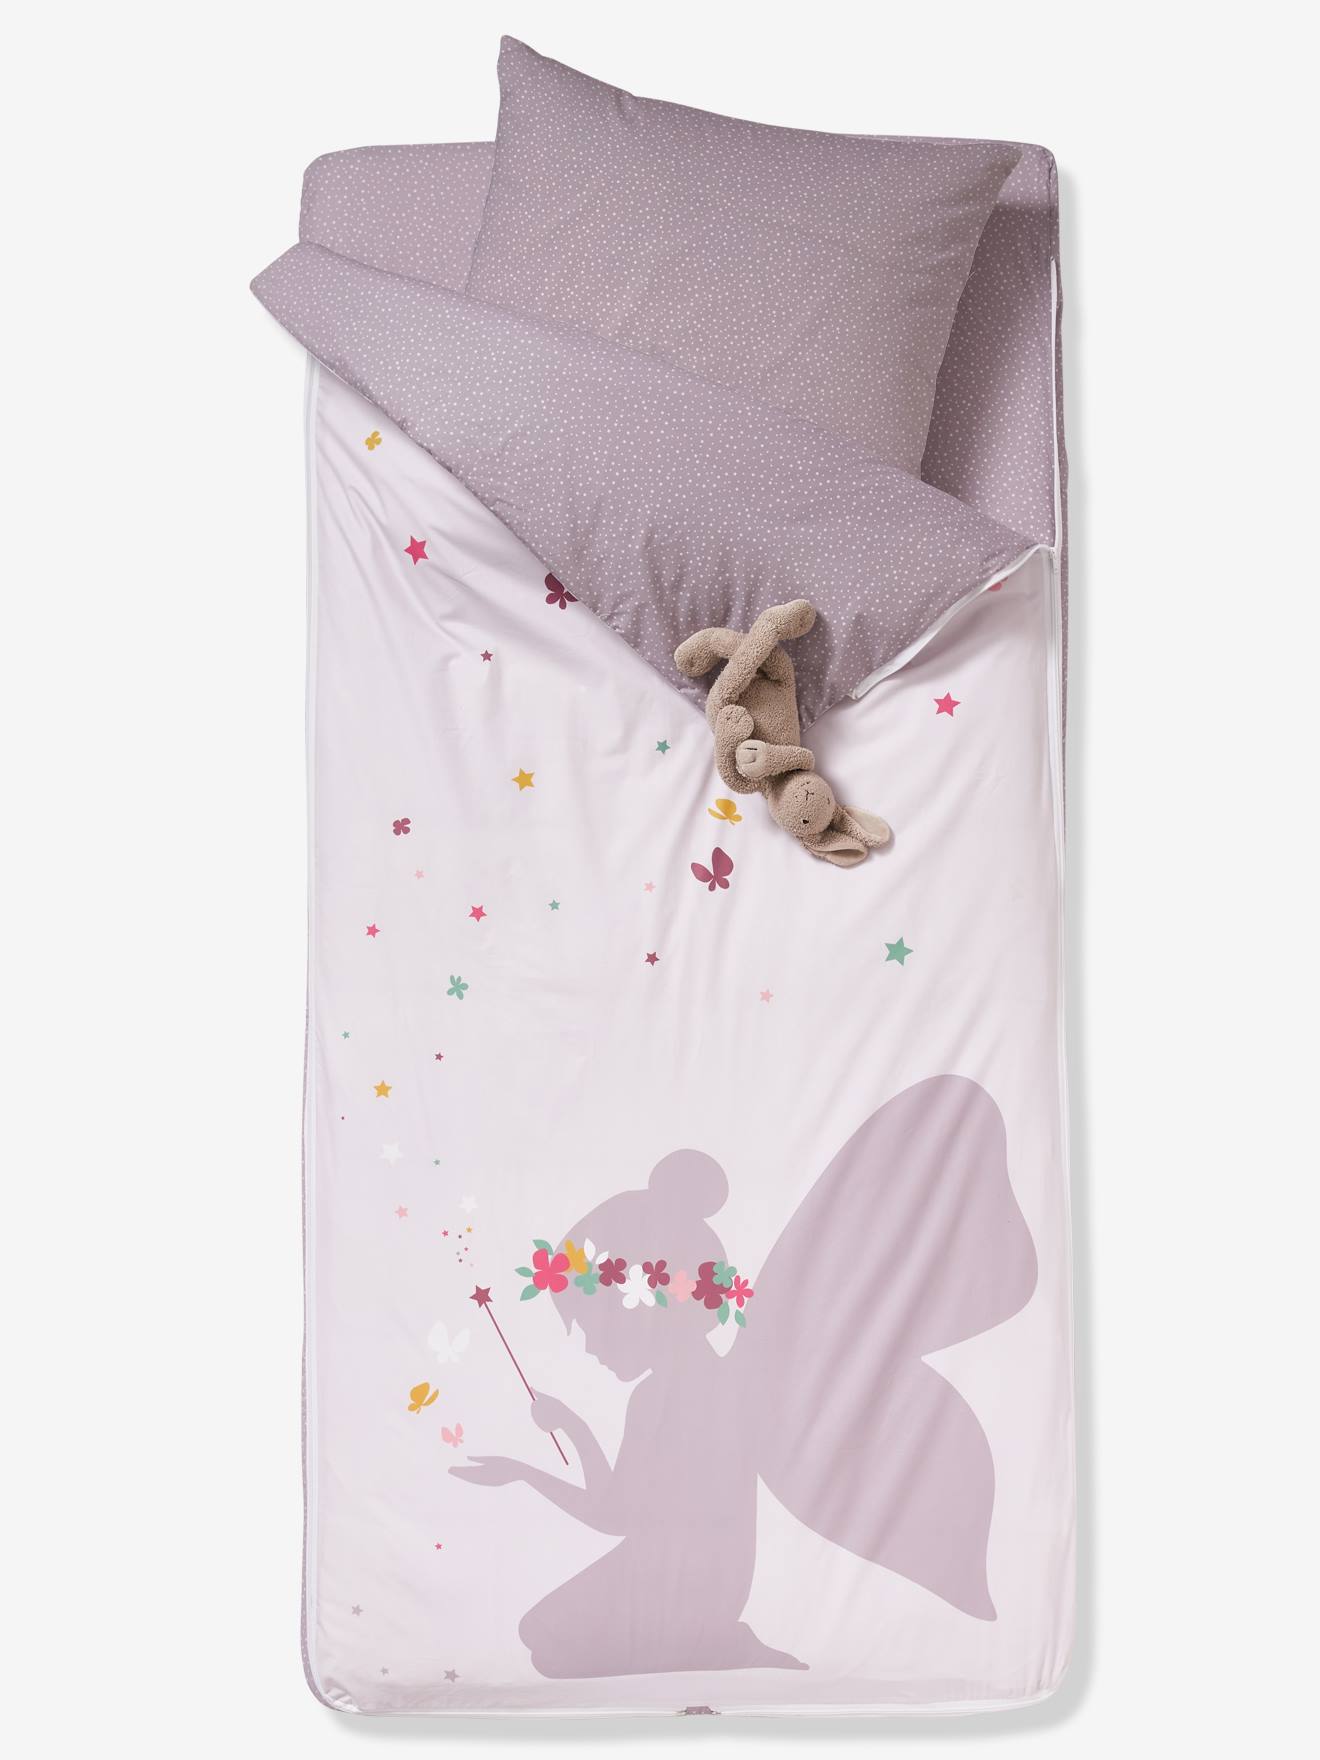 Kinder Schlafsack-Set KLEINE FEE mit Innendecke Oeko-Tex von Vertbaudet